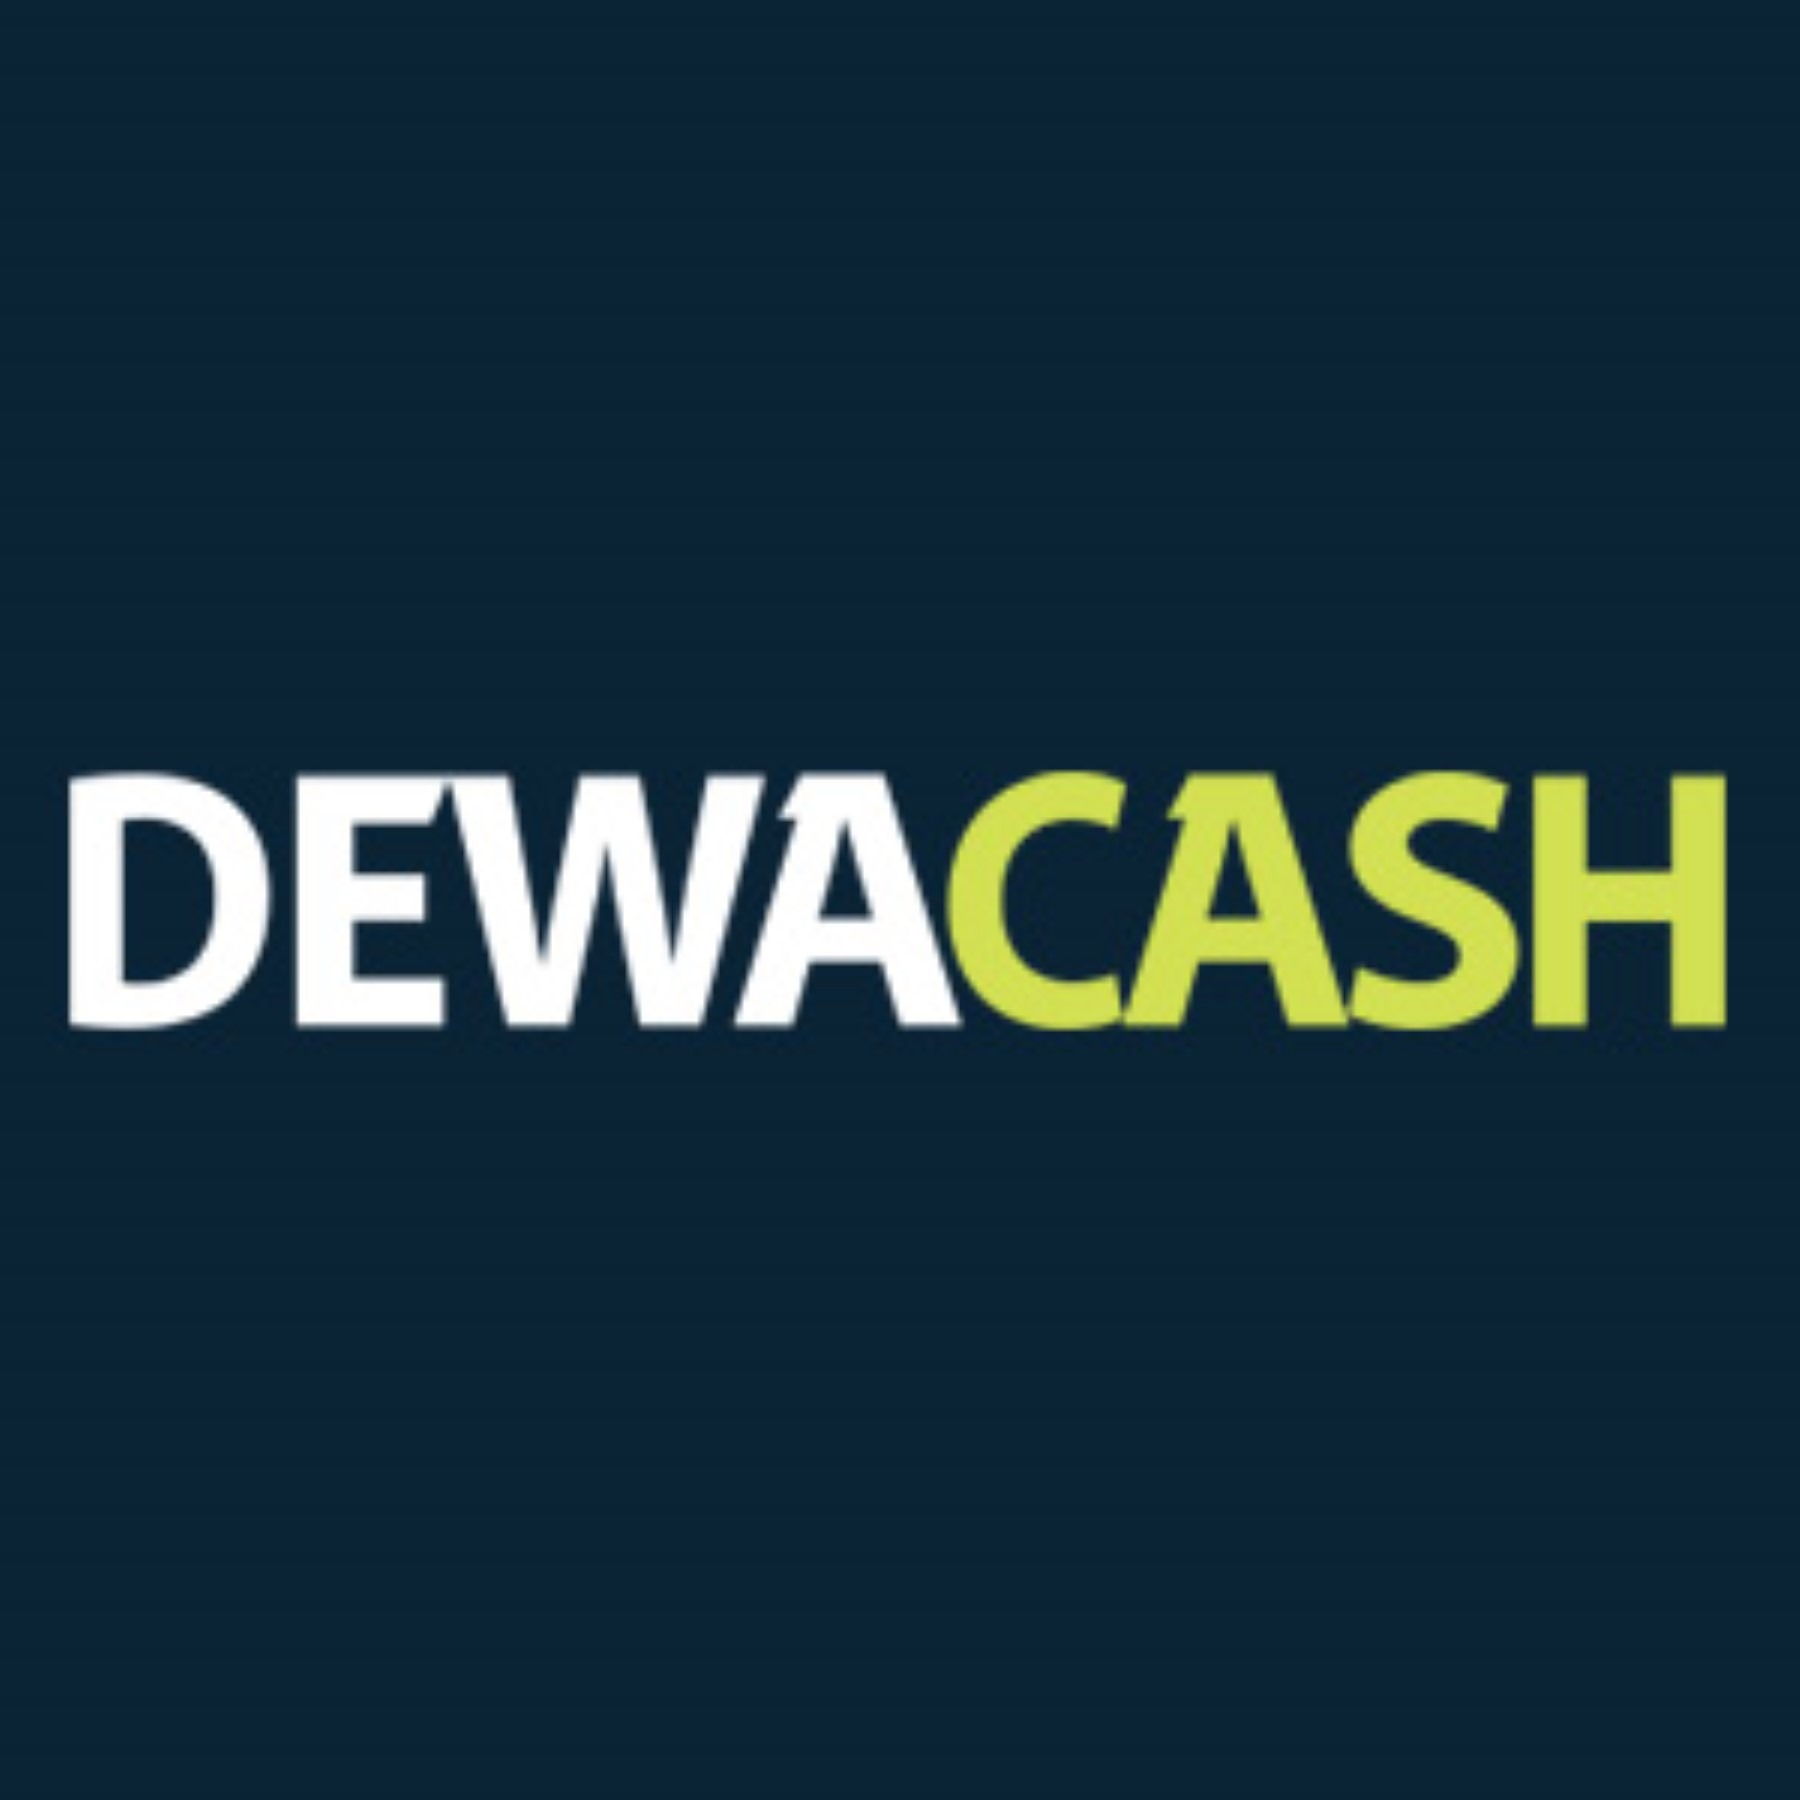 Dewacash | Dewacash Asia | Login Dewacash | Slot Dewacash